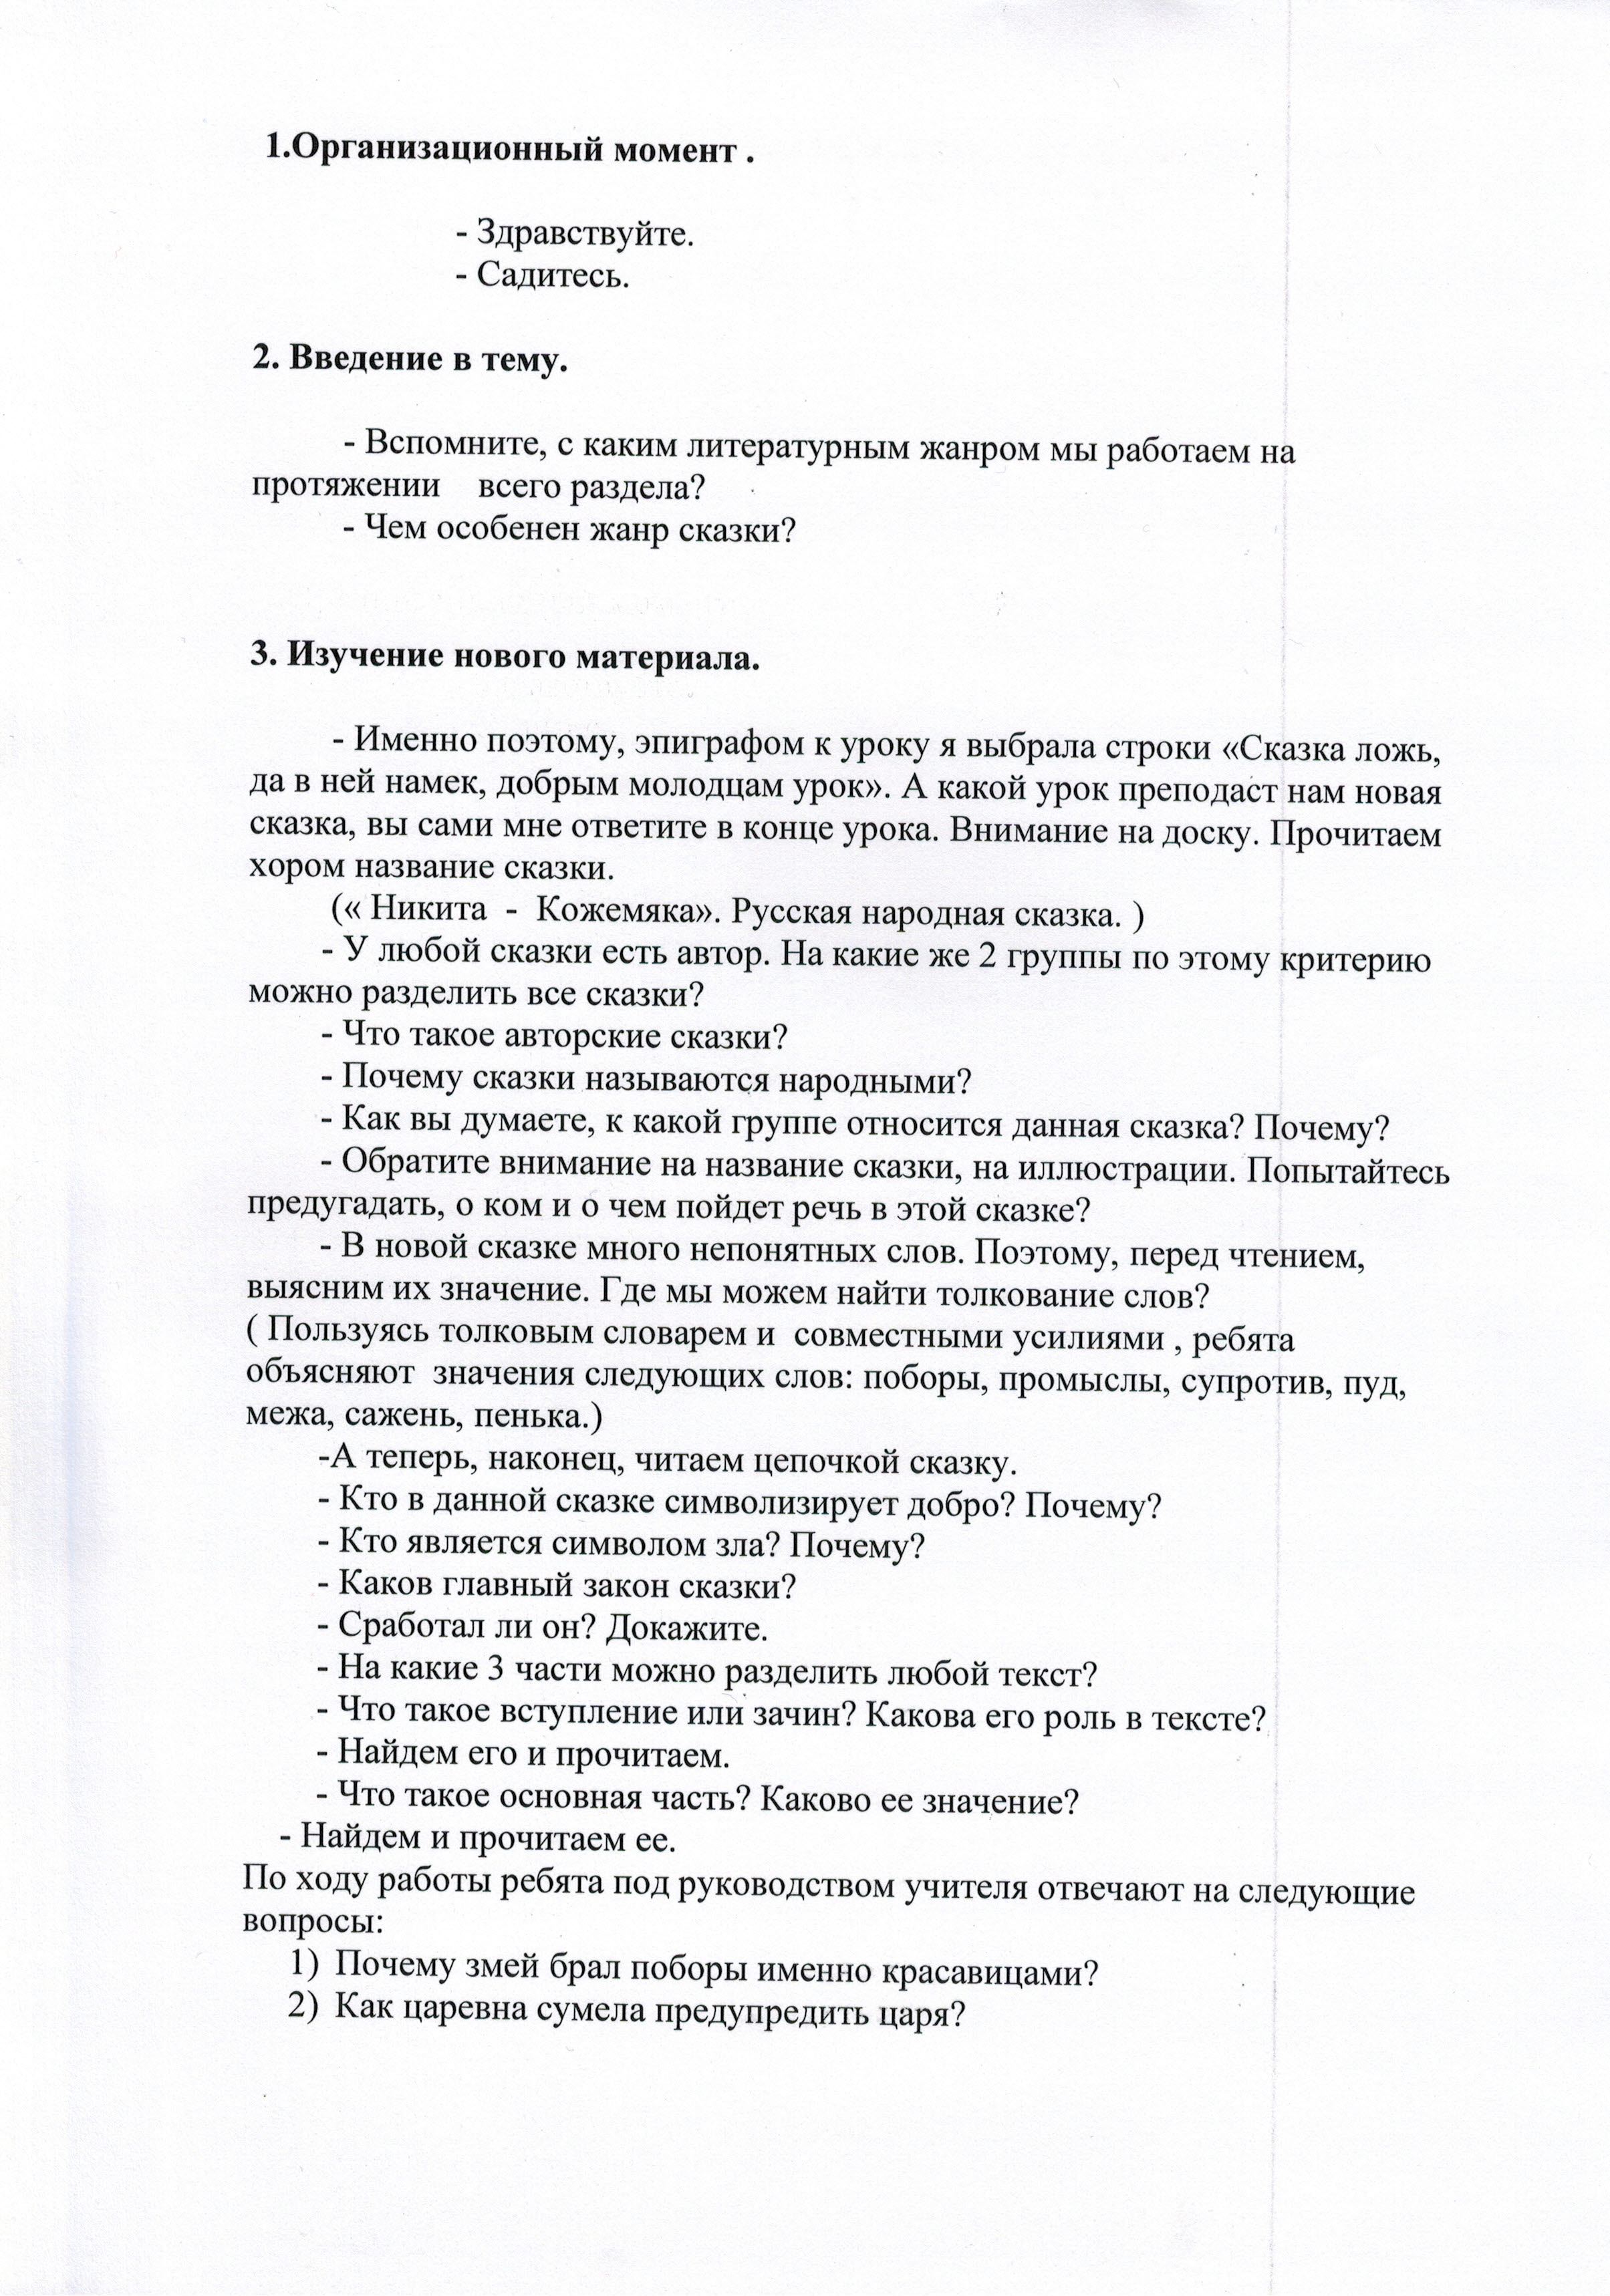 Урок литературного чтения 3 класс Богатырская сказкаНикита - Кожемяка.